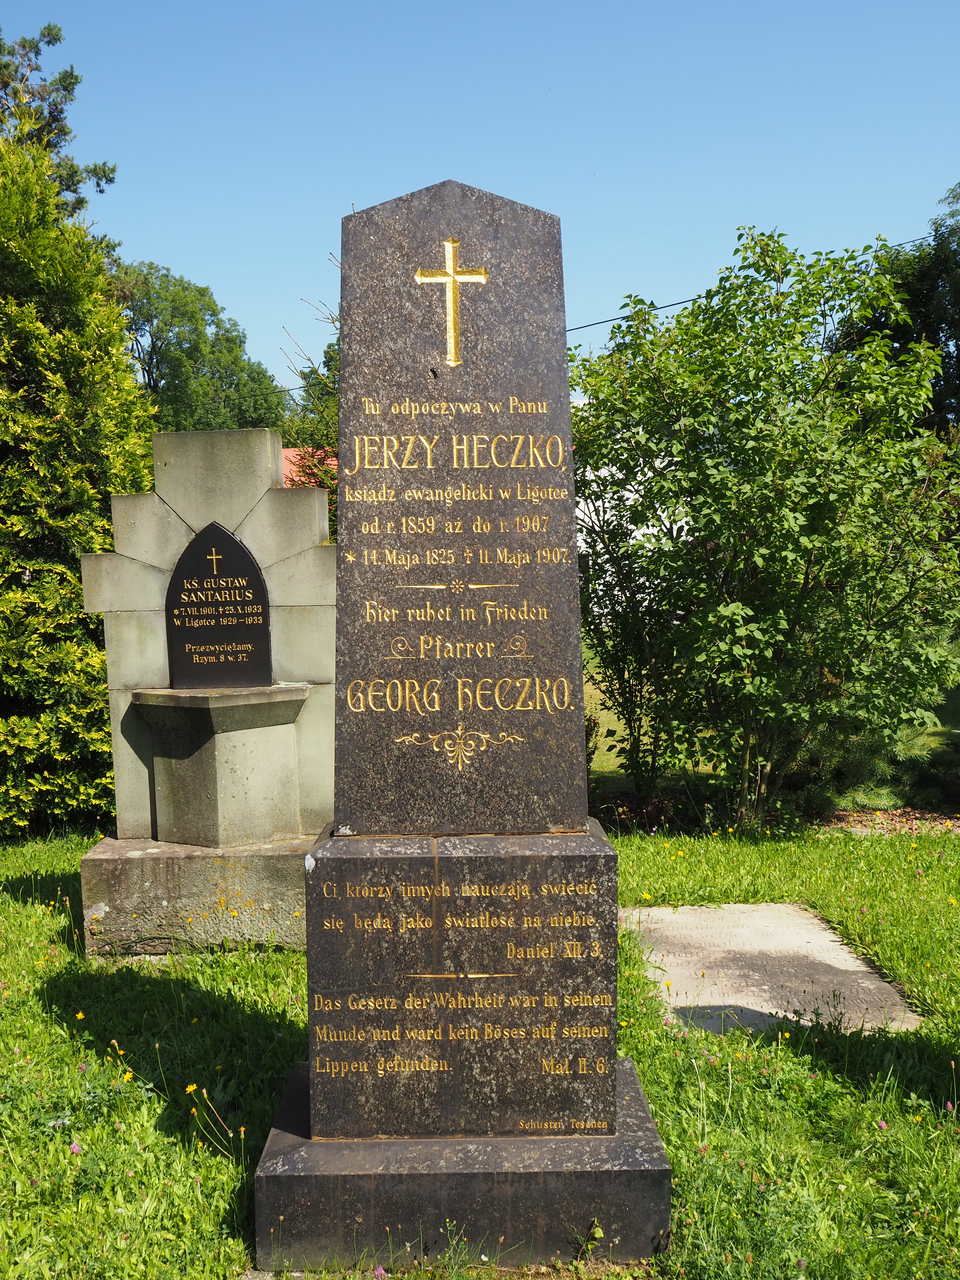 Tombstone of Jerzy Heczko, cemetery in Ligotka Kameralna, as of 2022